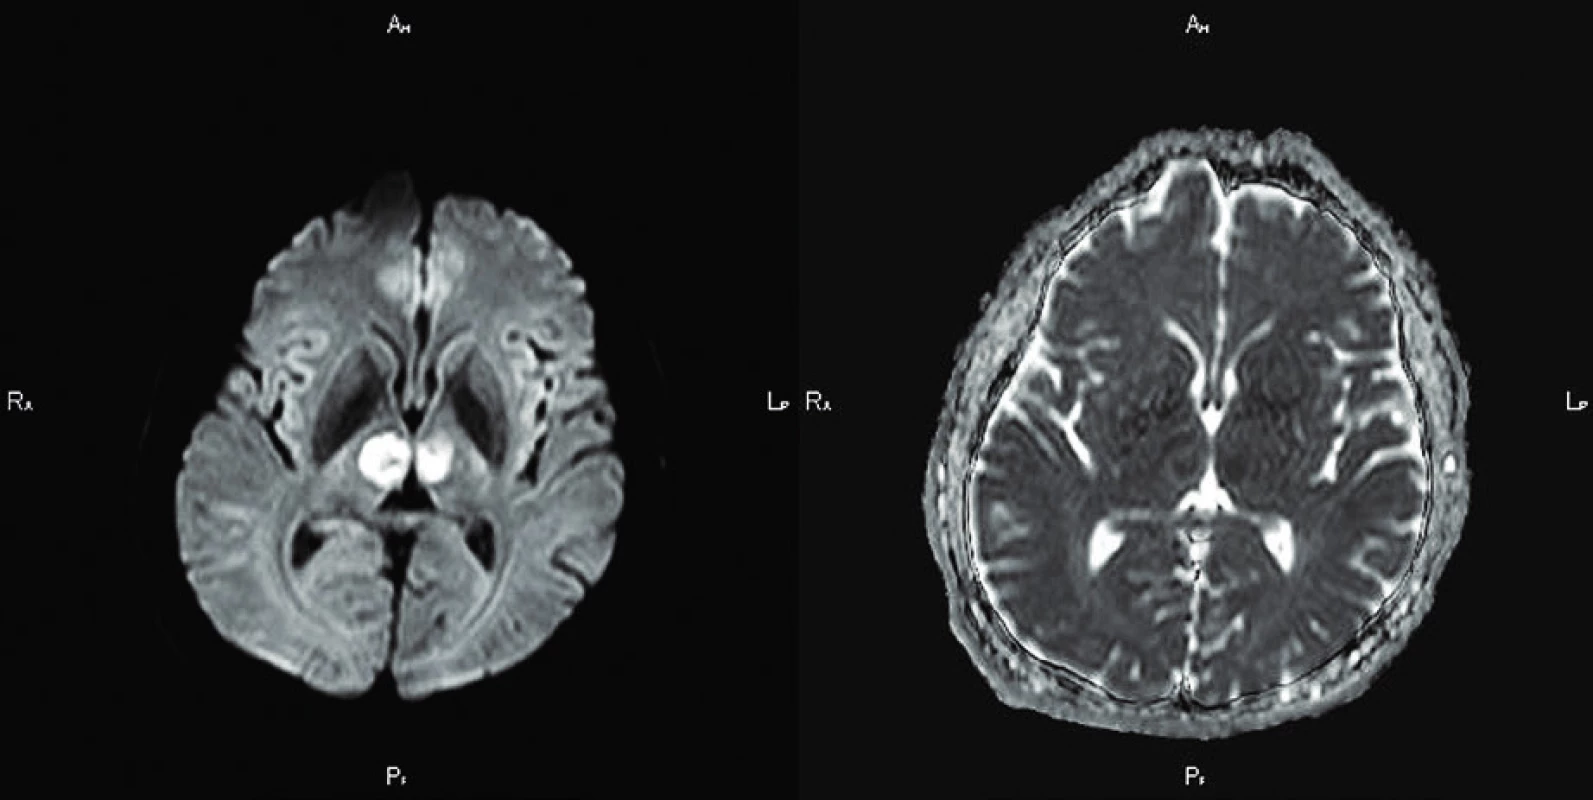 MR vyšetření mozku
Axiální DWI/ADC prokazují ischemii v obou talamech